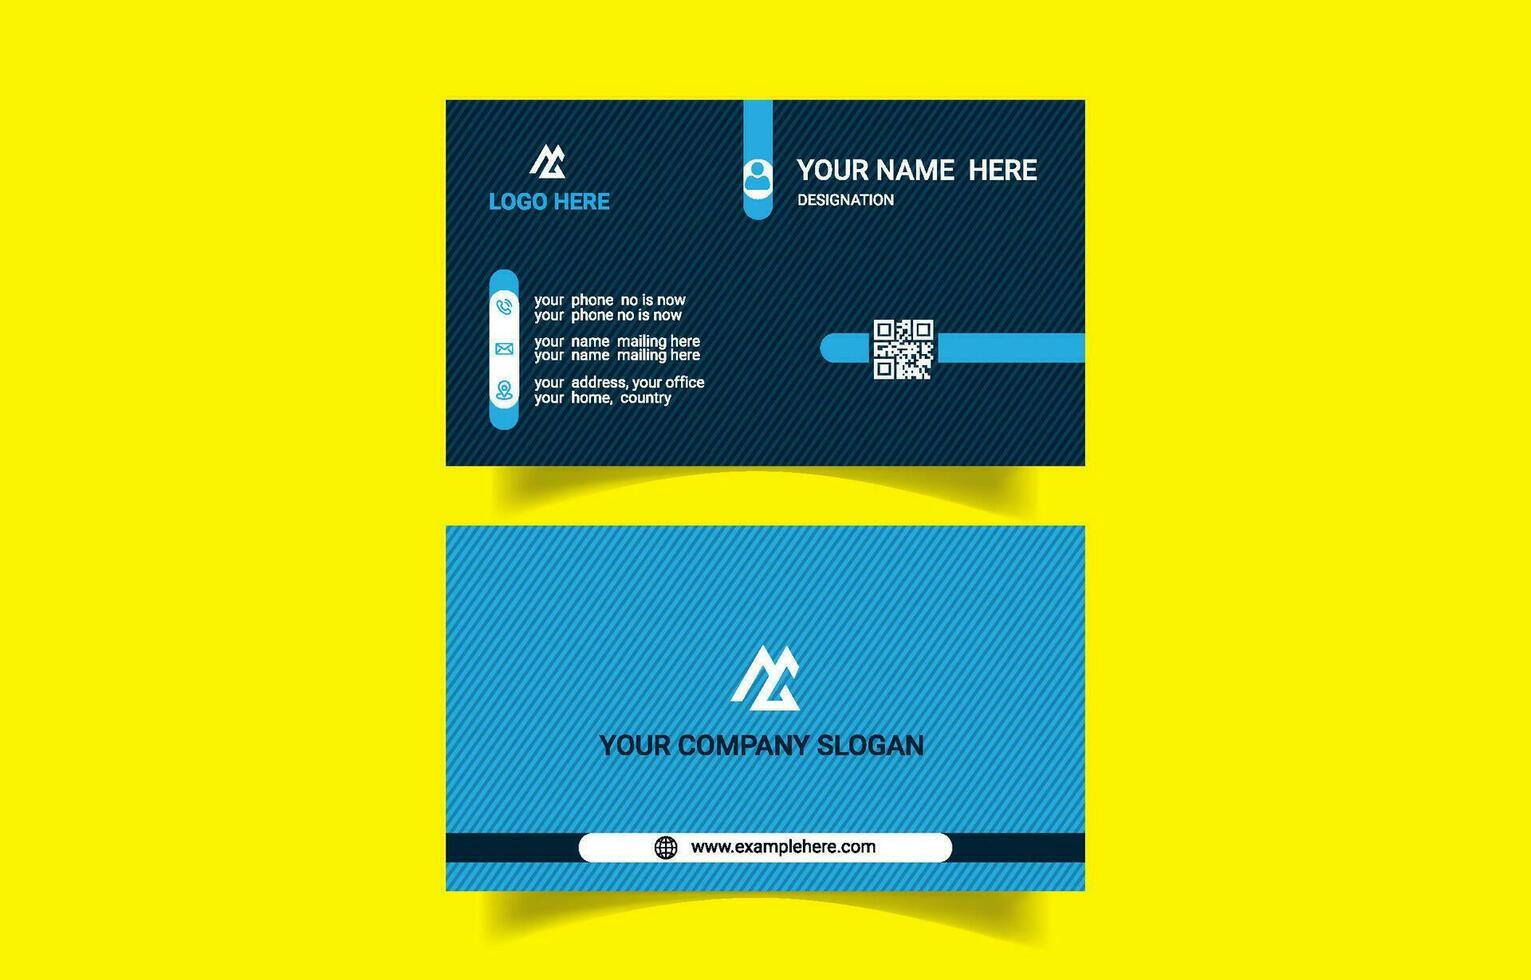 Minimalistic corporate business card design template vector